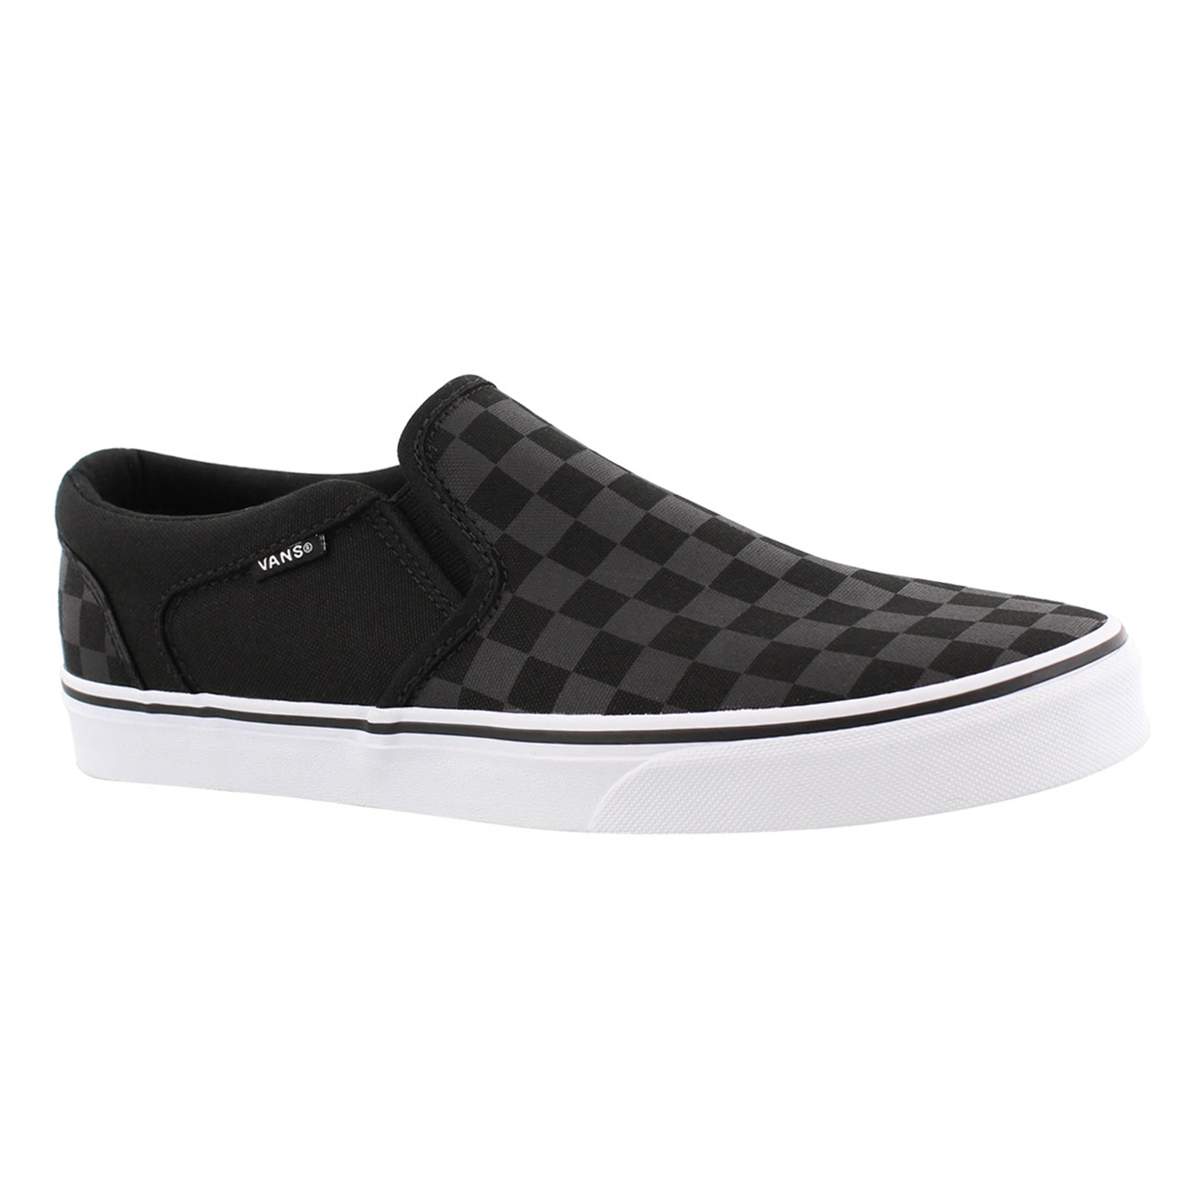 Vans Men's ASHER black checkered slip on sneakers